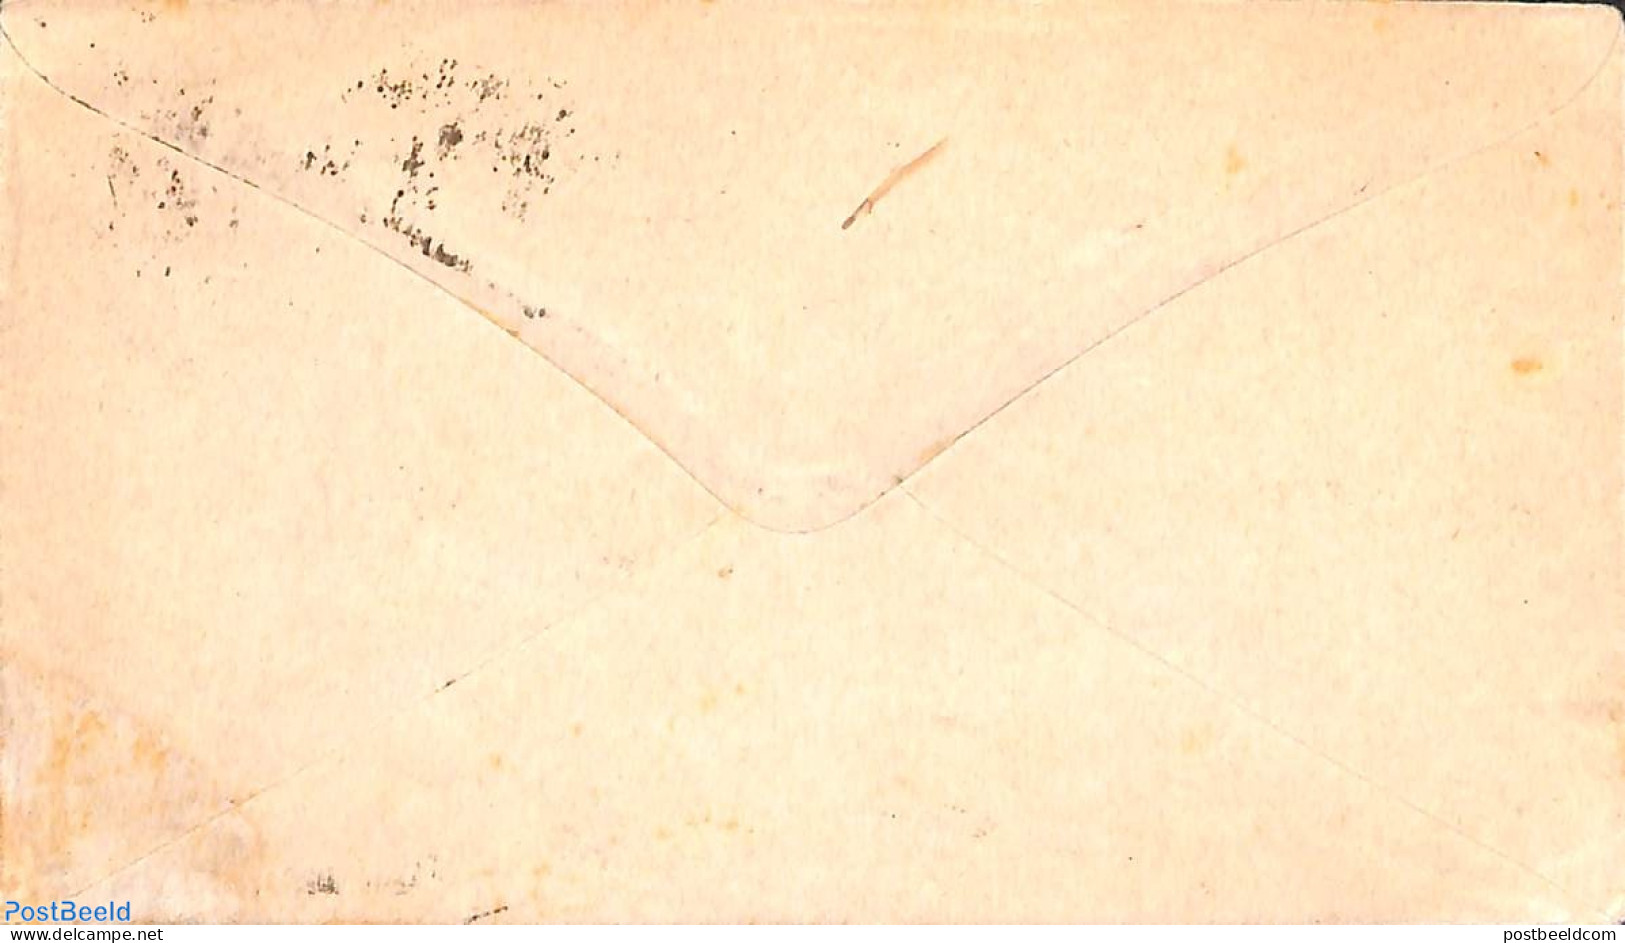 Sweden 1885 Envelope 10o (150x87mm), Used Postal Stationary - Storia Postale